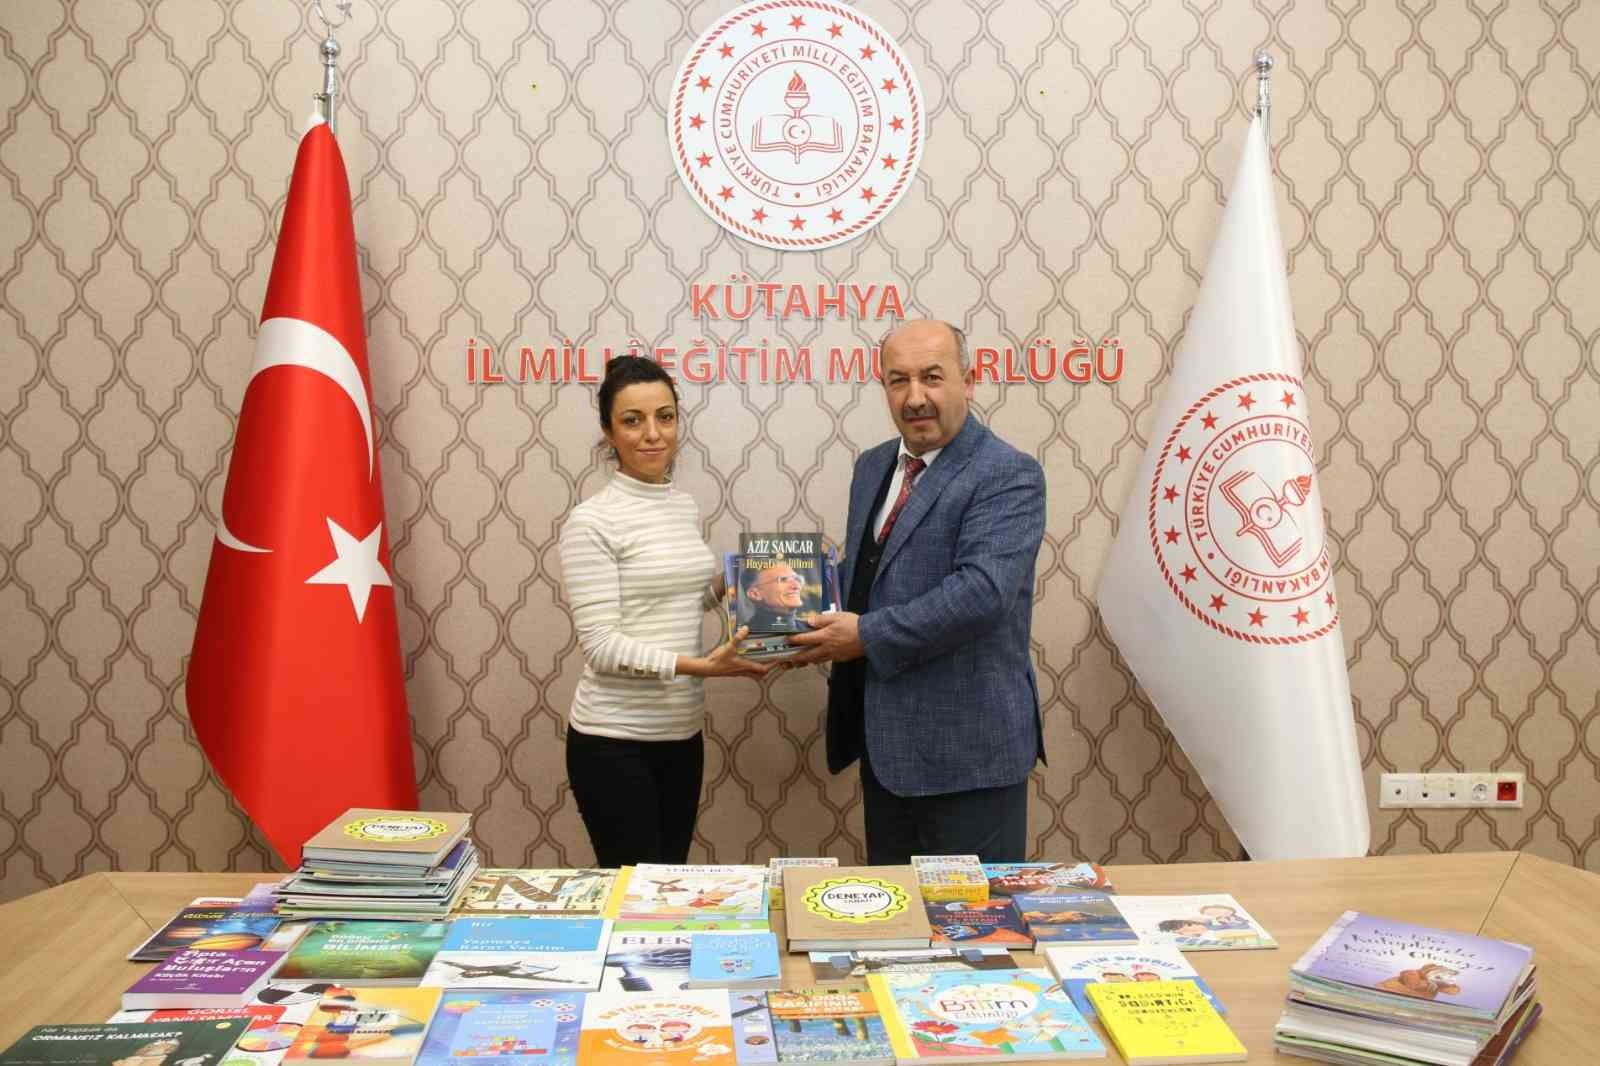 Kütahya’da okullara 13 bin 200 kitap dağıtıldı #kutahya